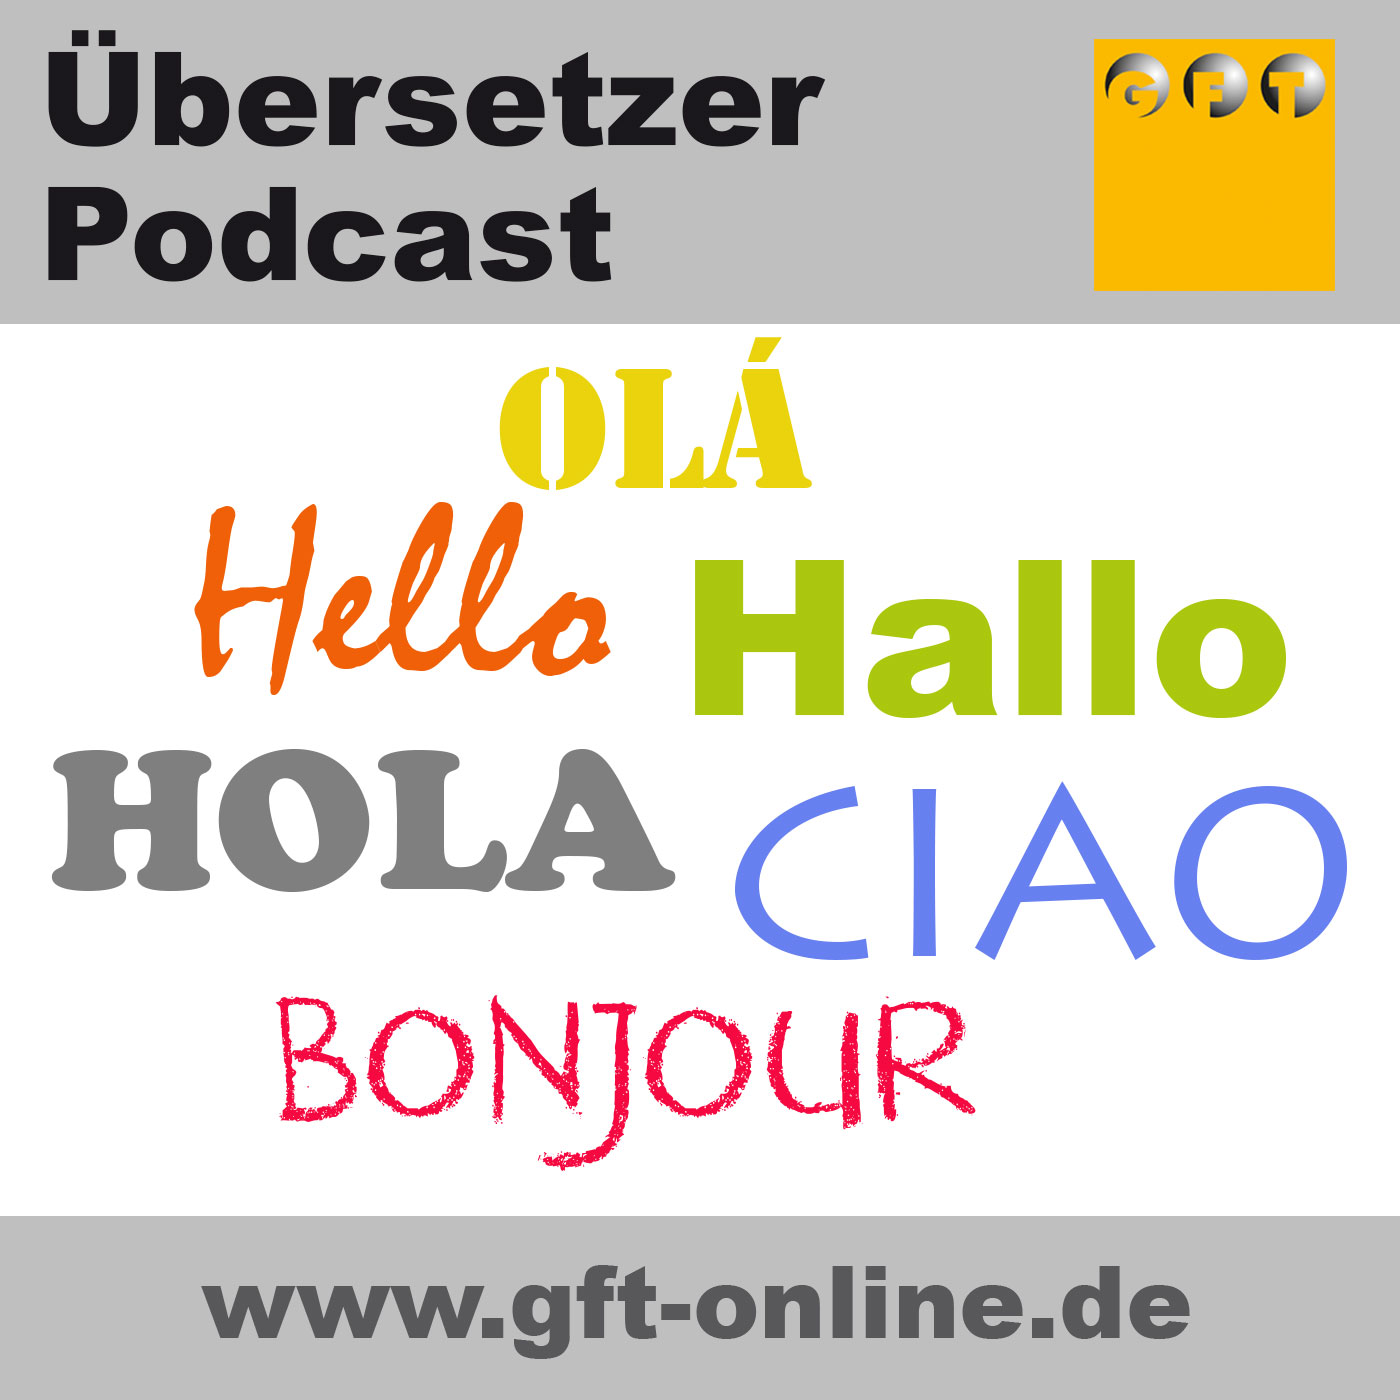 Der Übersetzer Podcast | Interviews, Wissenswertes, Aufklärung, News, Weiterbildung